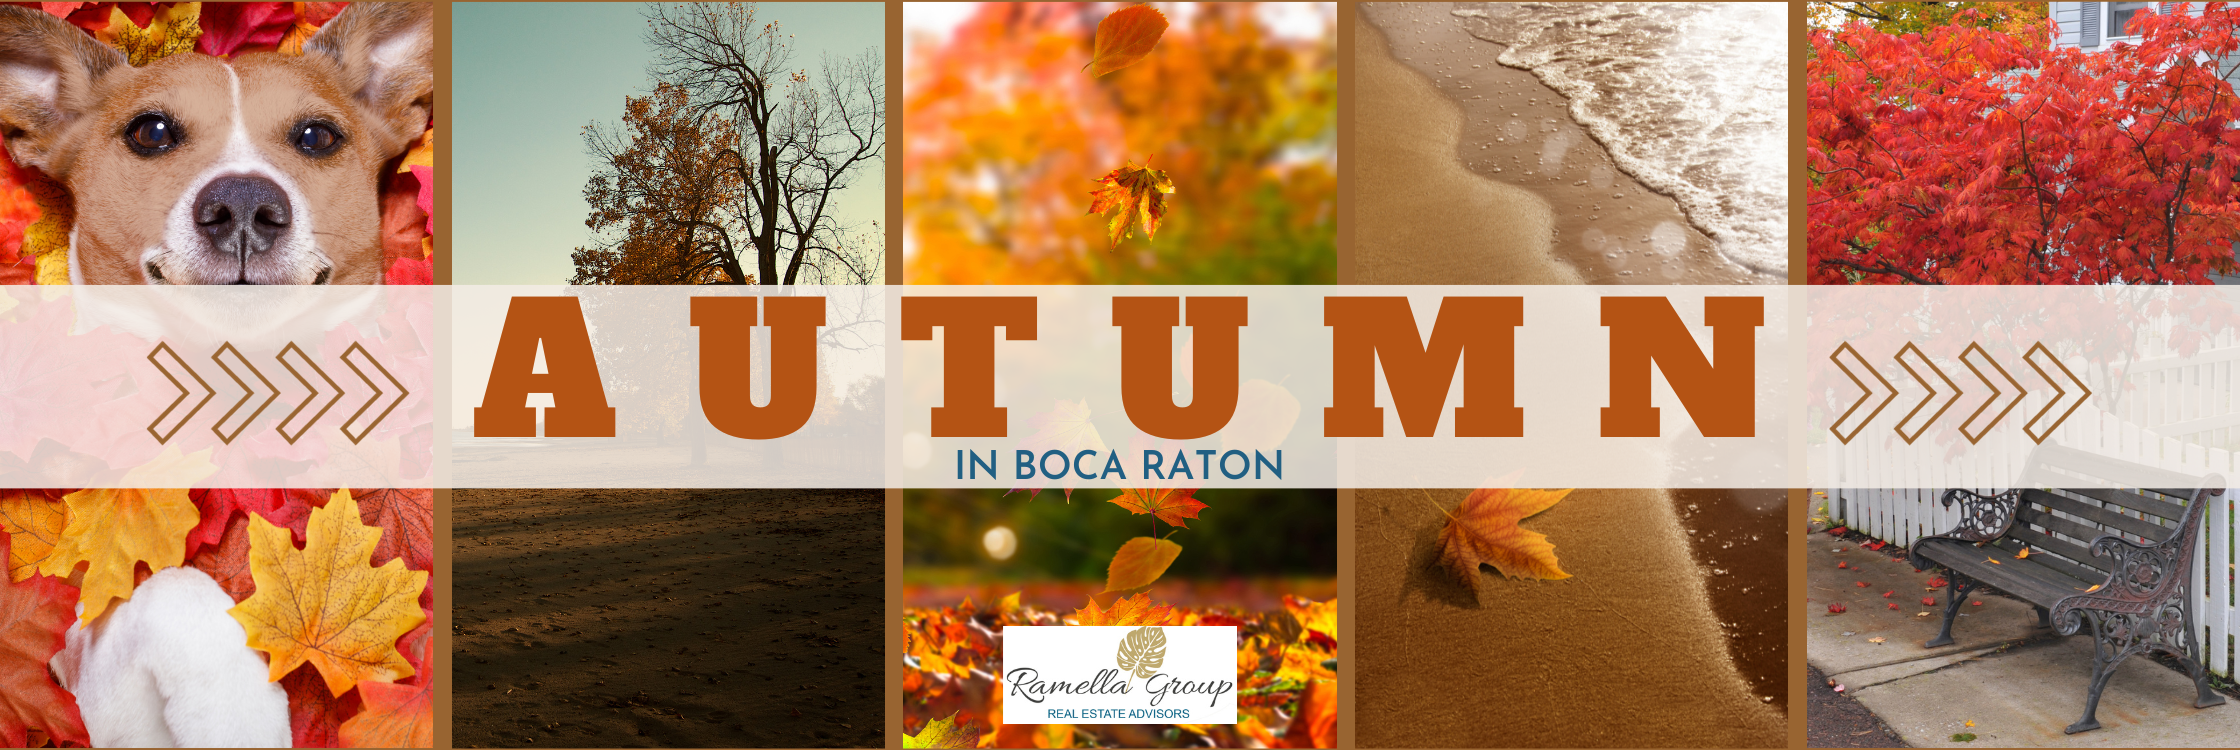 Autumn in Boca Raton